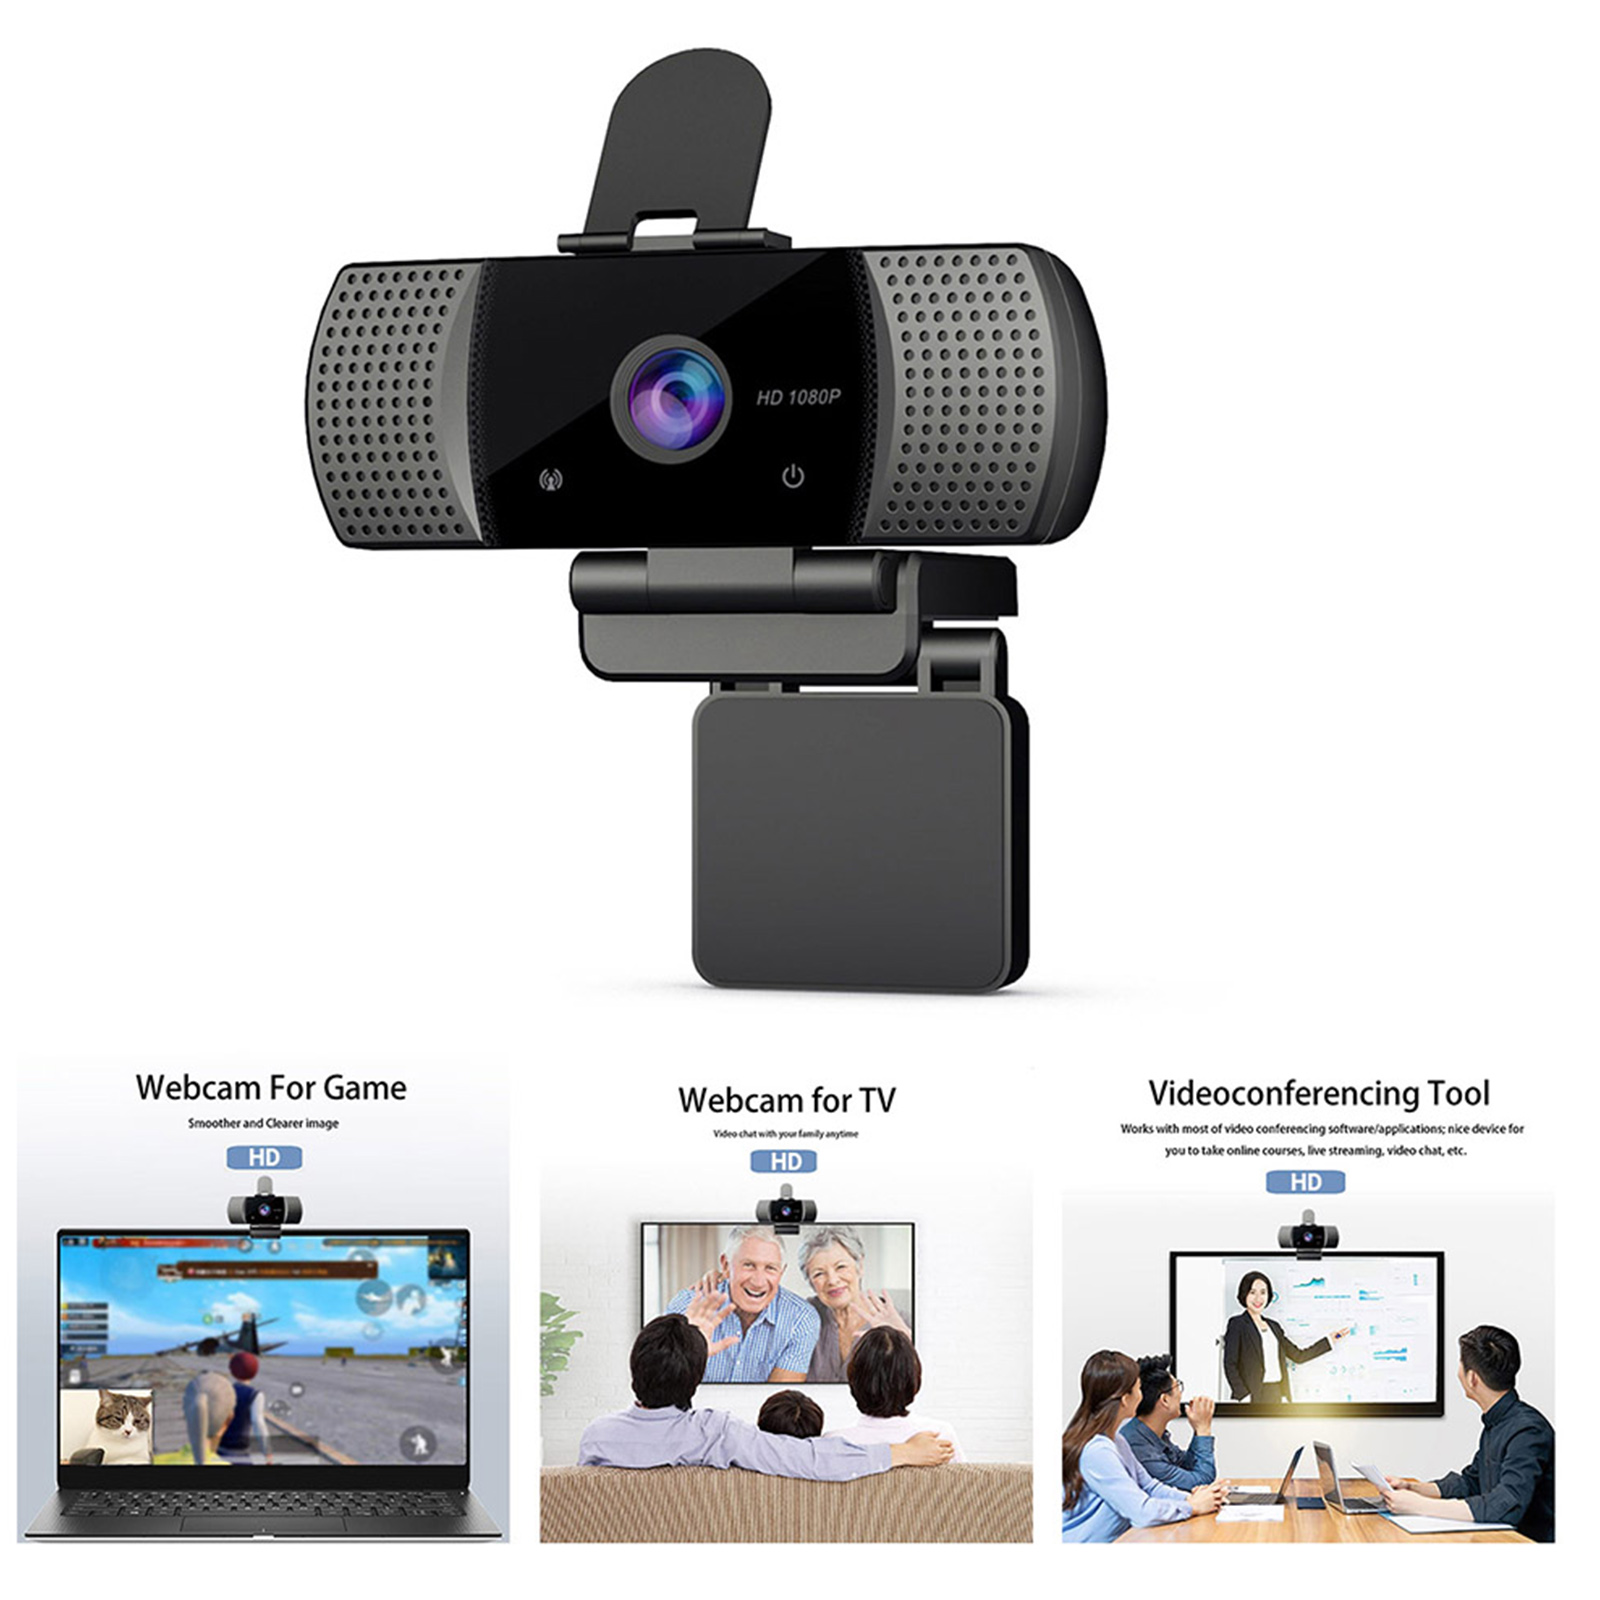 Webcam USB Góc Rộng Full HD 1080p USB2.0 Không Có Ổ Đĩa Với Mic Web Cam Cho Hội Nghị Trực Tuyến Phát Trực Tiếp Trên Máy Tính Xách Tay